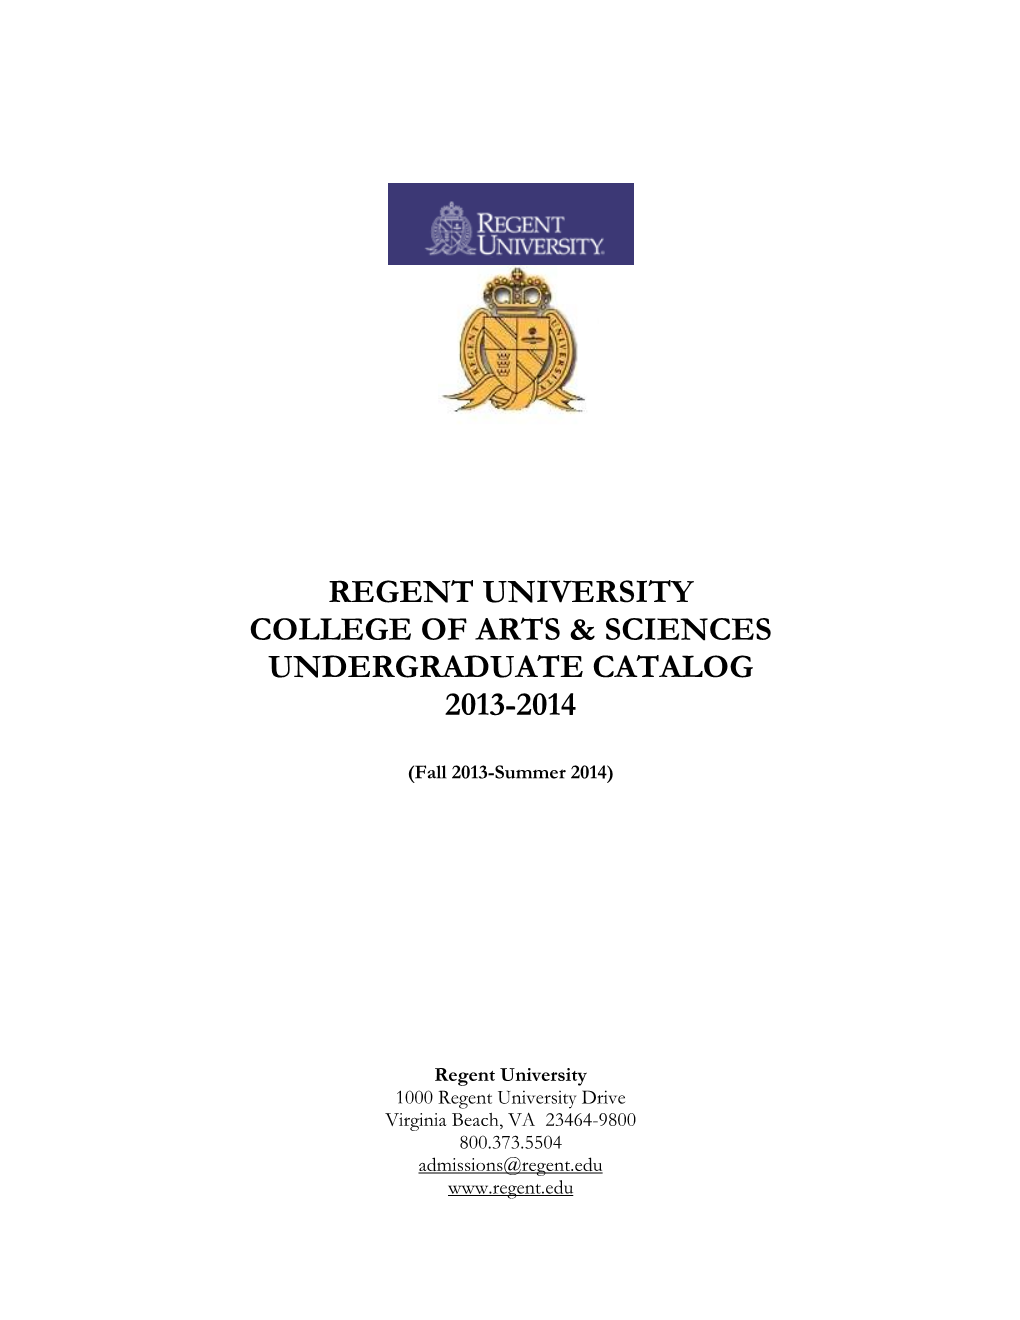 Regent University College of Arts & Sciences Undergraduate Catalog 2013-2014